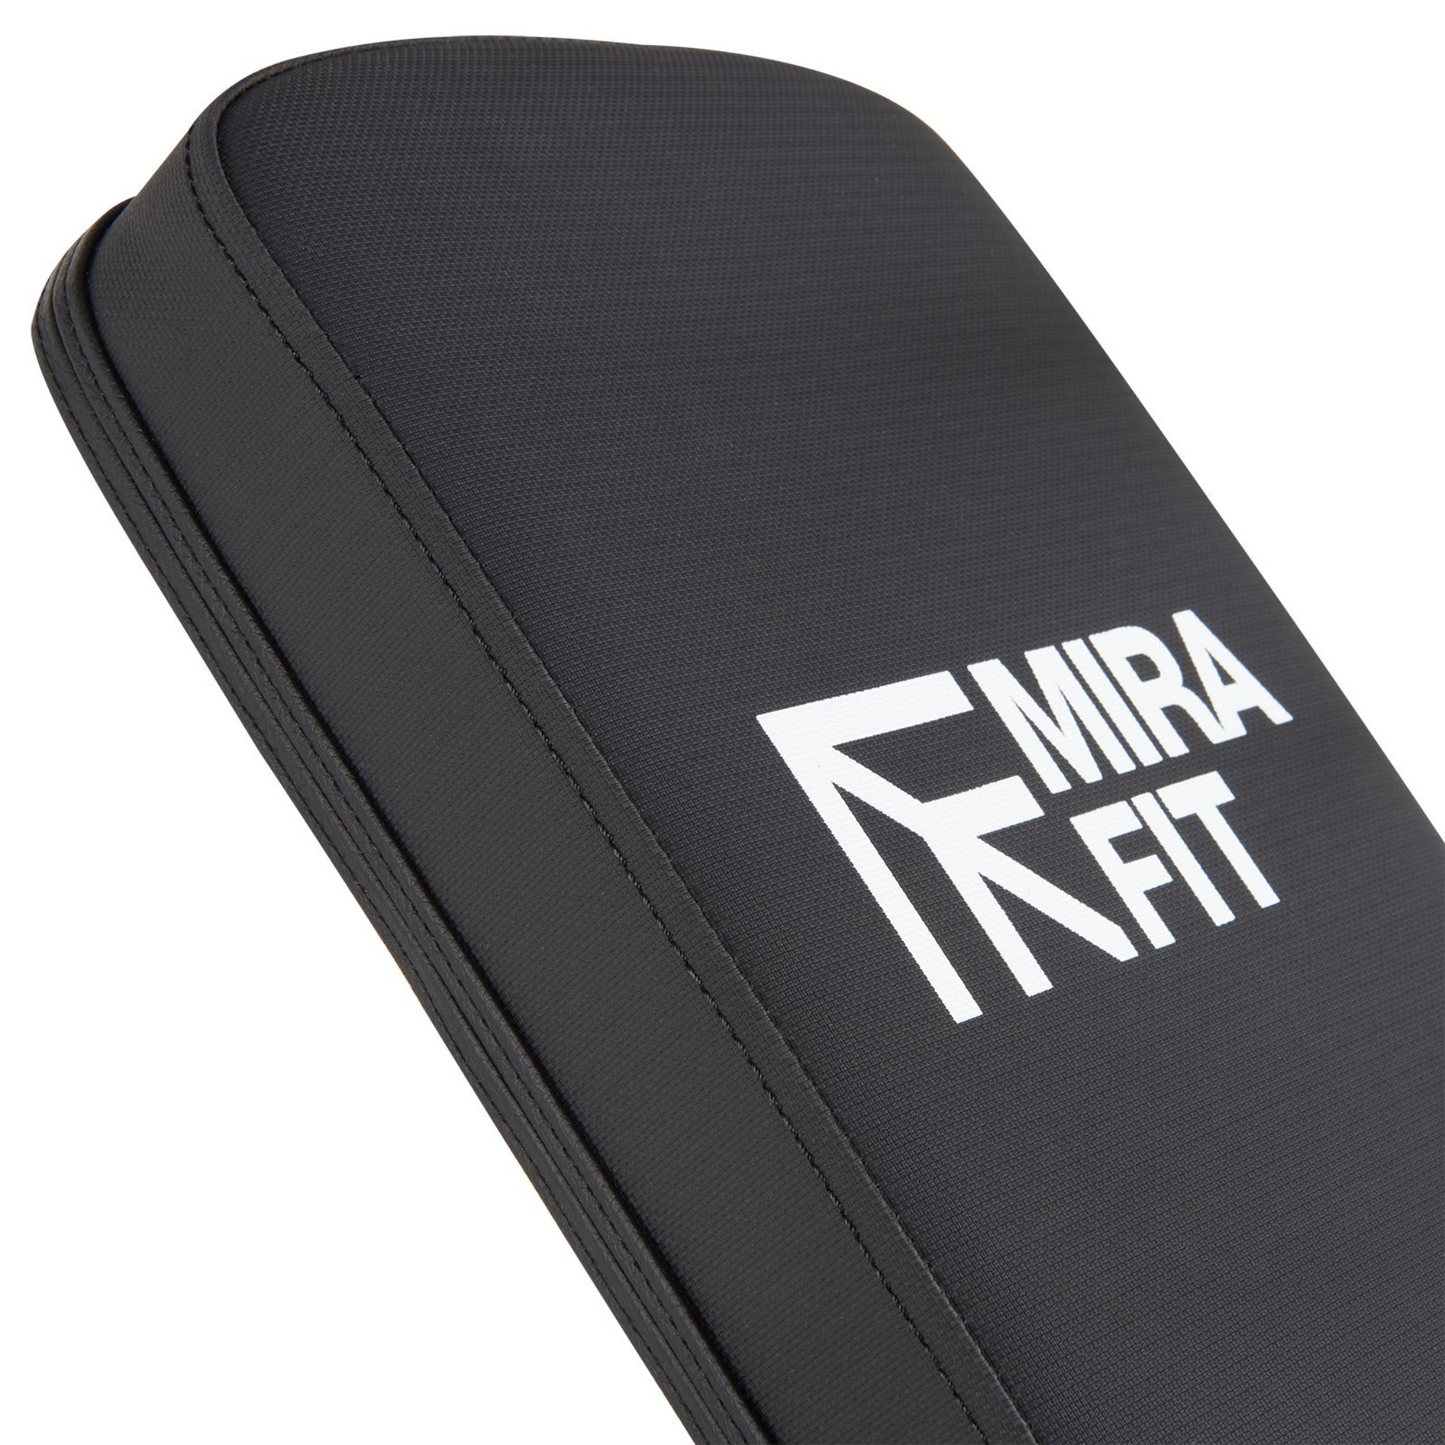 Mirafit M150 Adjustable Weight Bench